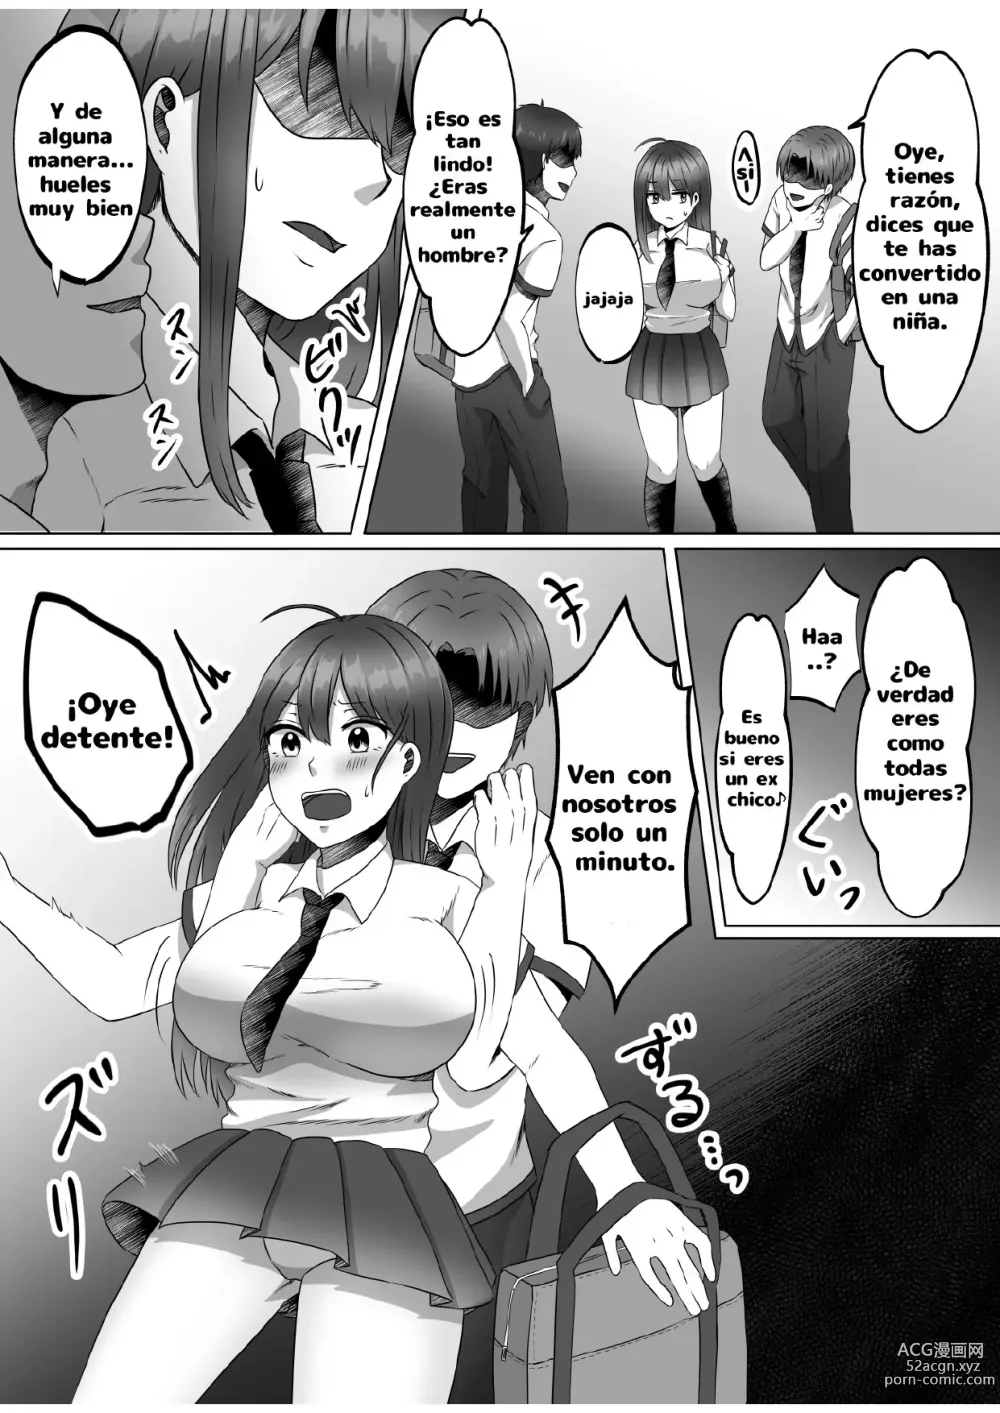 Page 9 of doujinshi ¿Porque me convertí en una mujer?